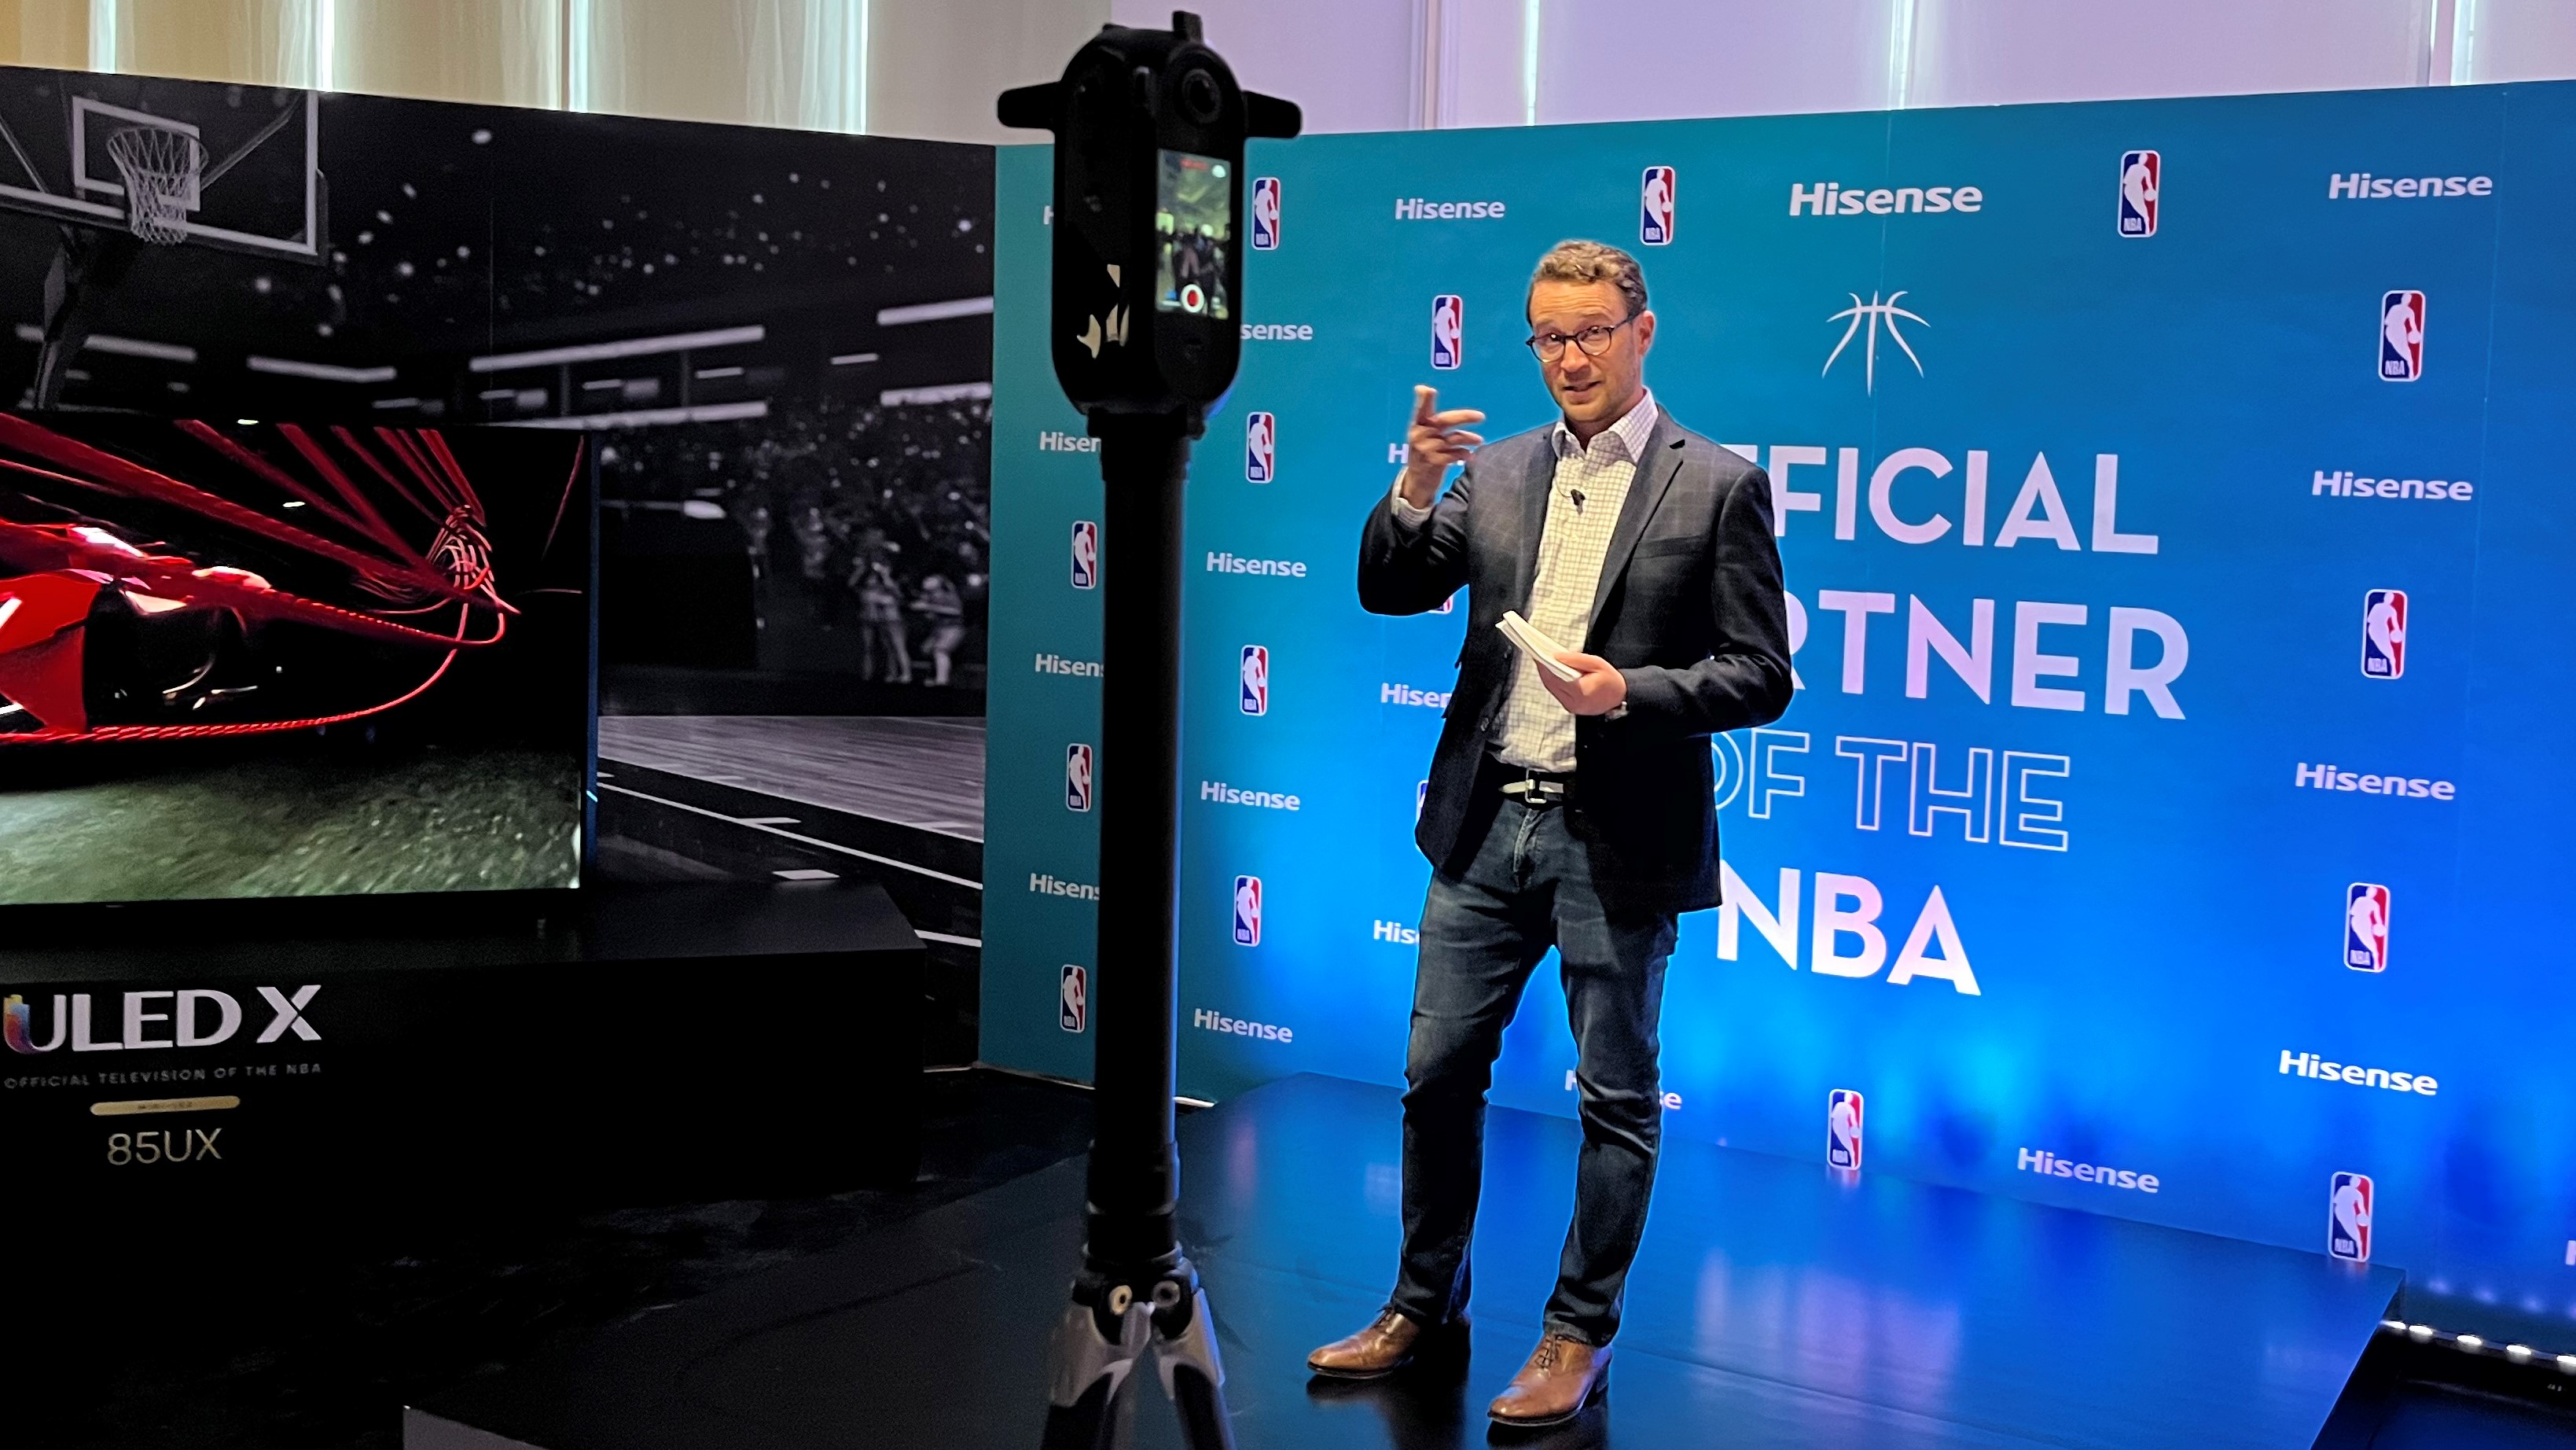 Генеральный директор Hisense USA Дэвид Голд объявляет о спонсорстве бренда в НБА рядом с ULED X TV